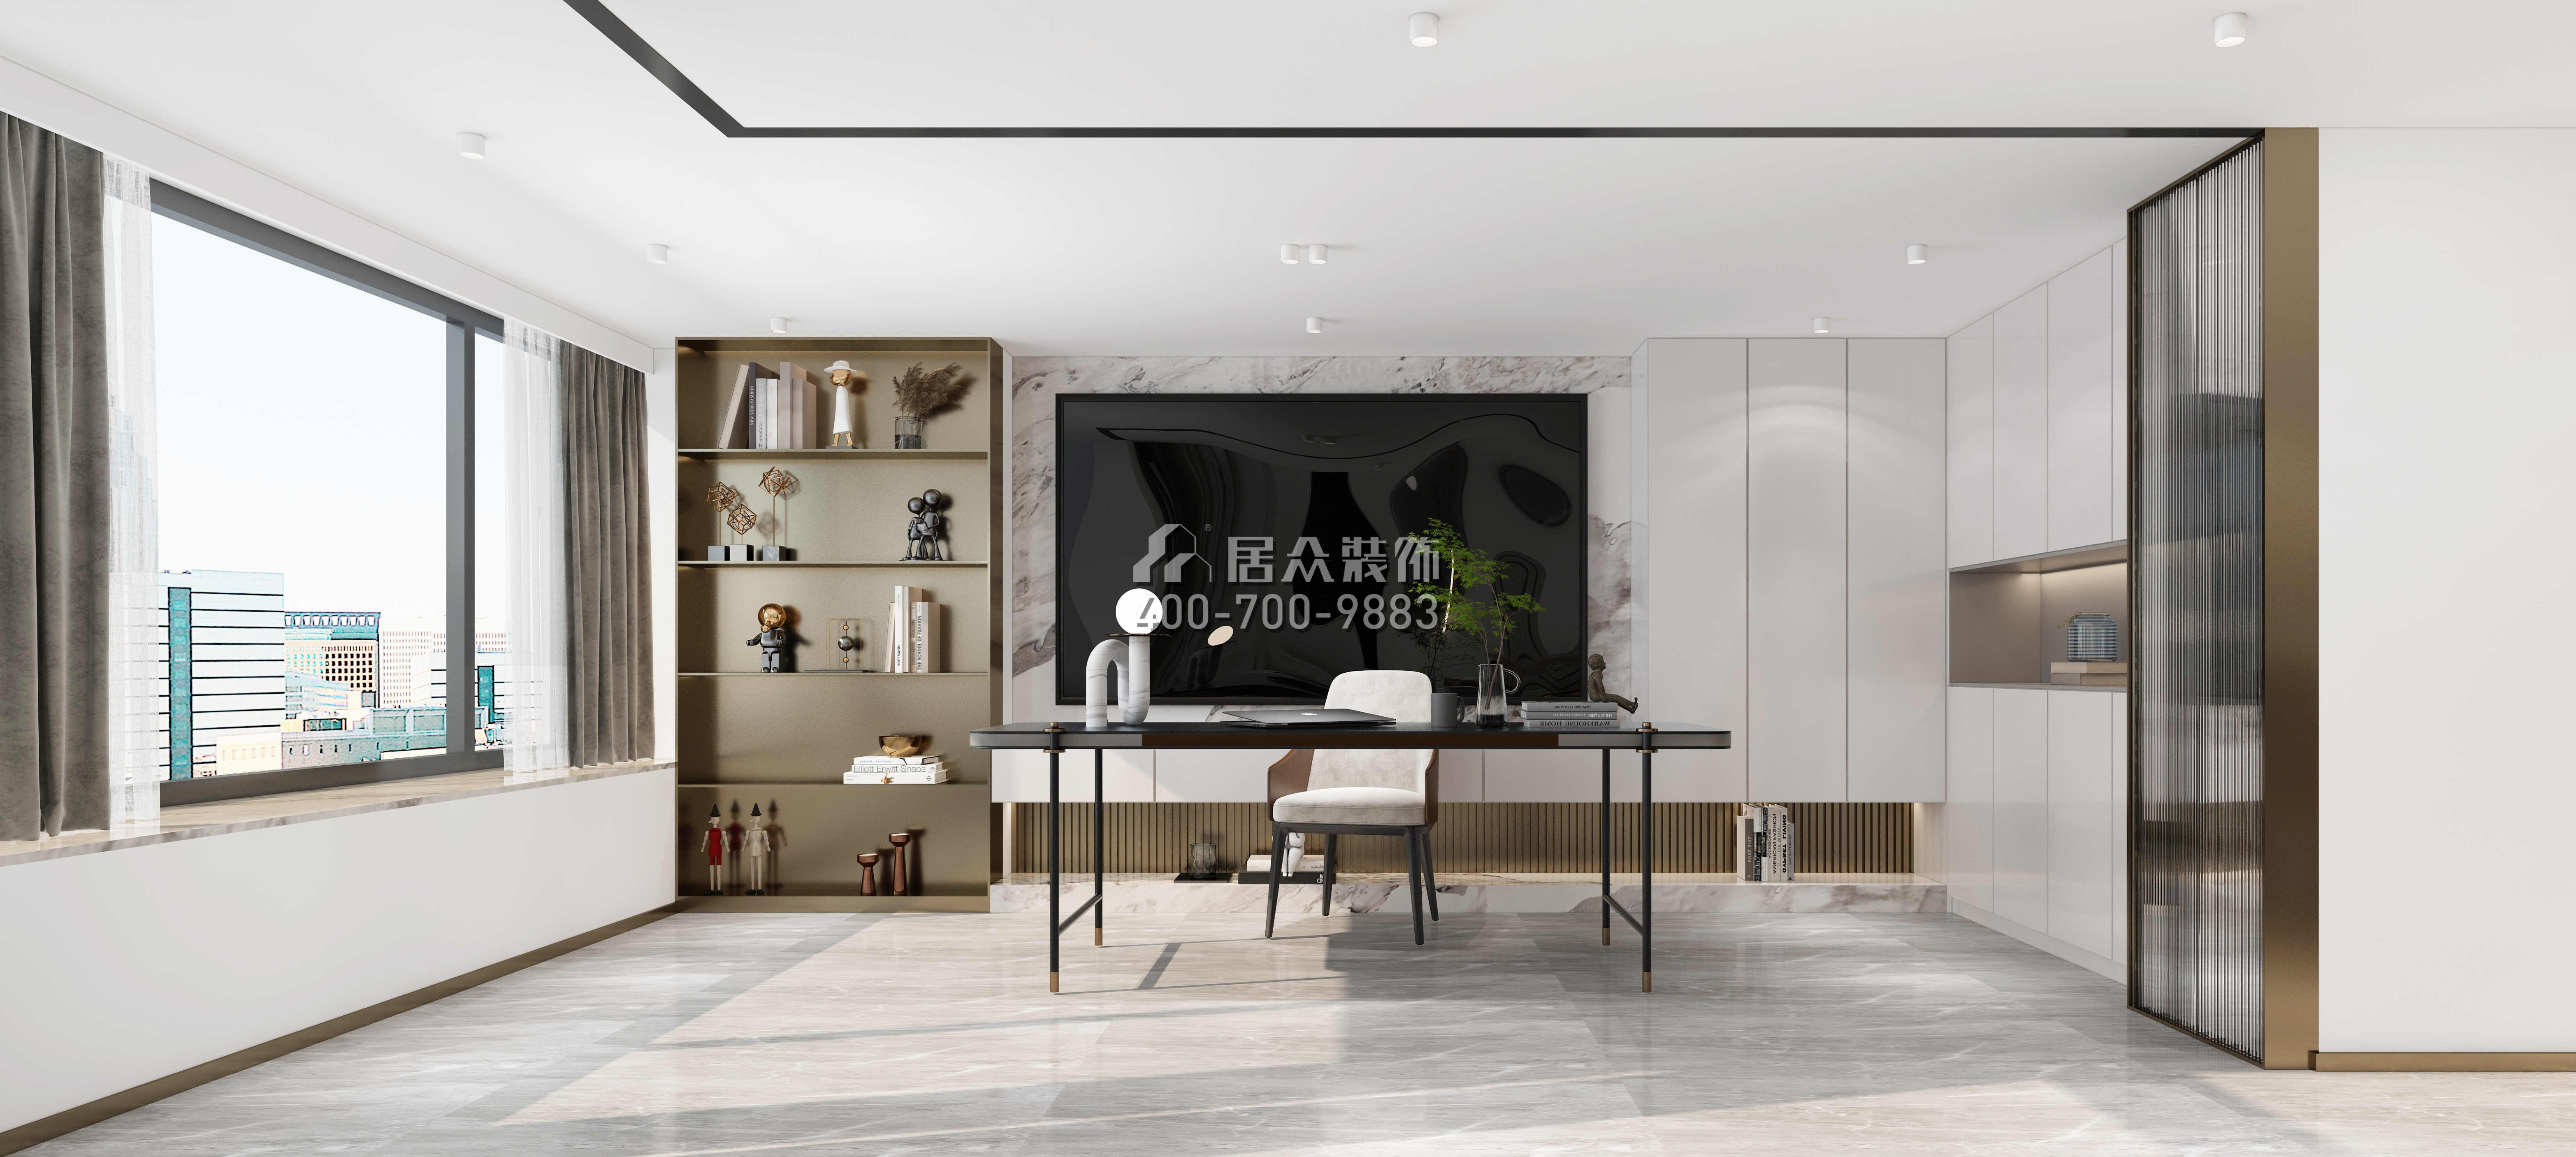 萬科臻灣匯110平方米現代簡約風格平層戶型客廳裝修效果圖